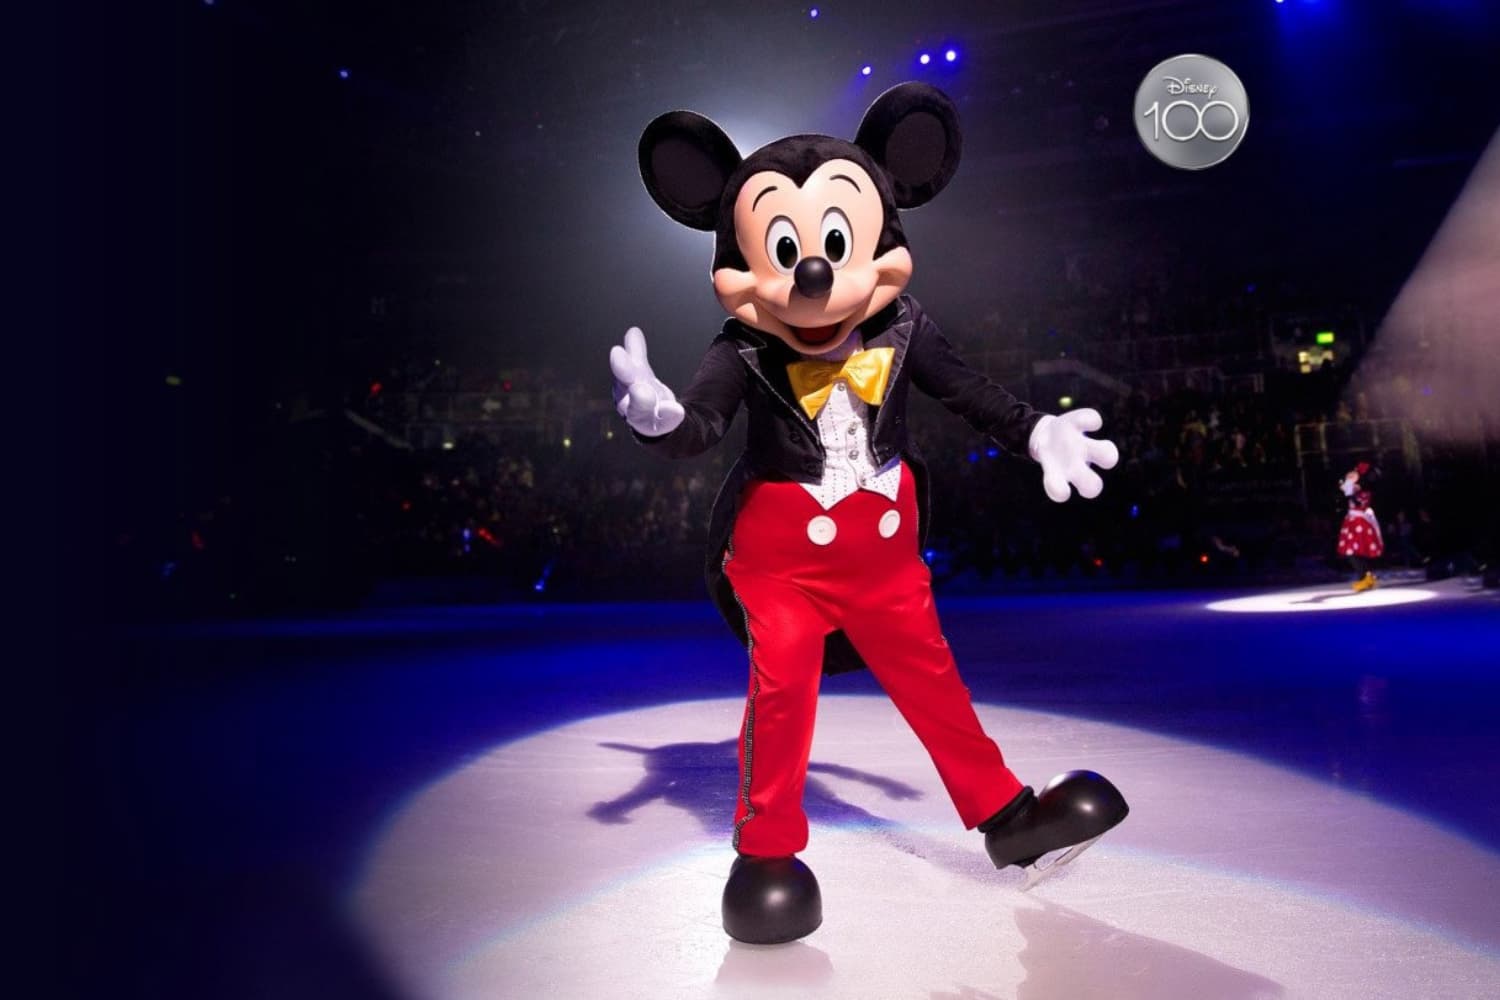 Disney On Ice “100 Years of Wonder” arrives in Madrid